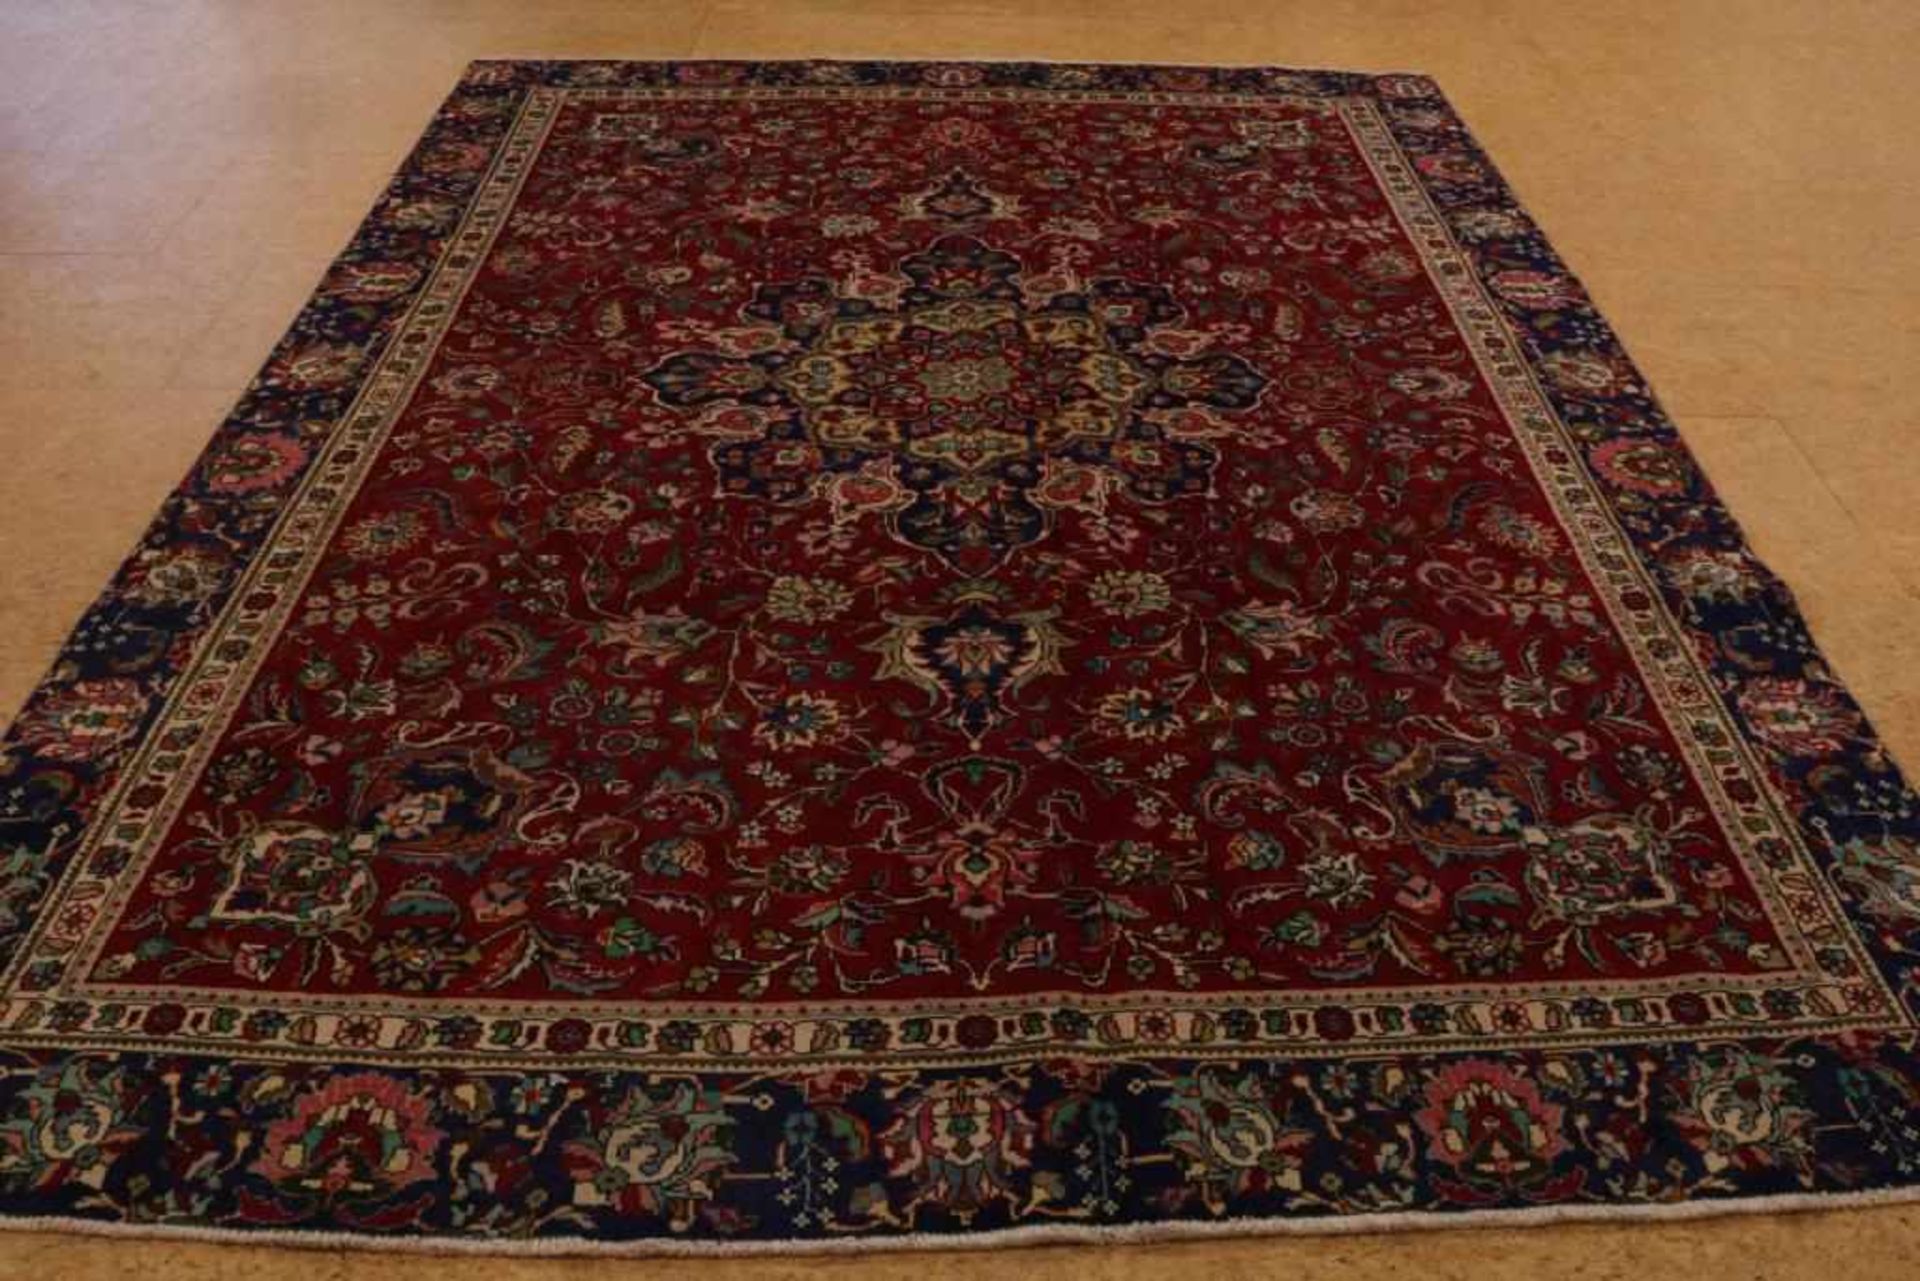 Tabriz carpet 370 x 267 cm.Tapijt, Tabriz 370 x 267 cm.